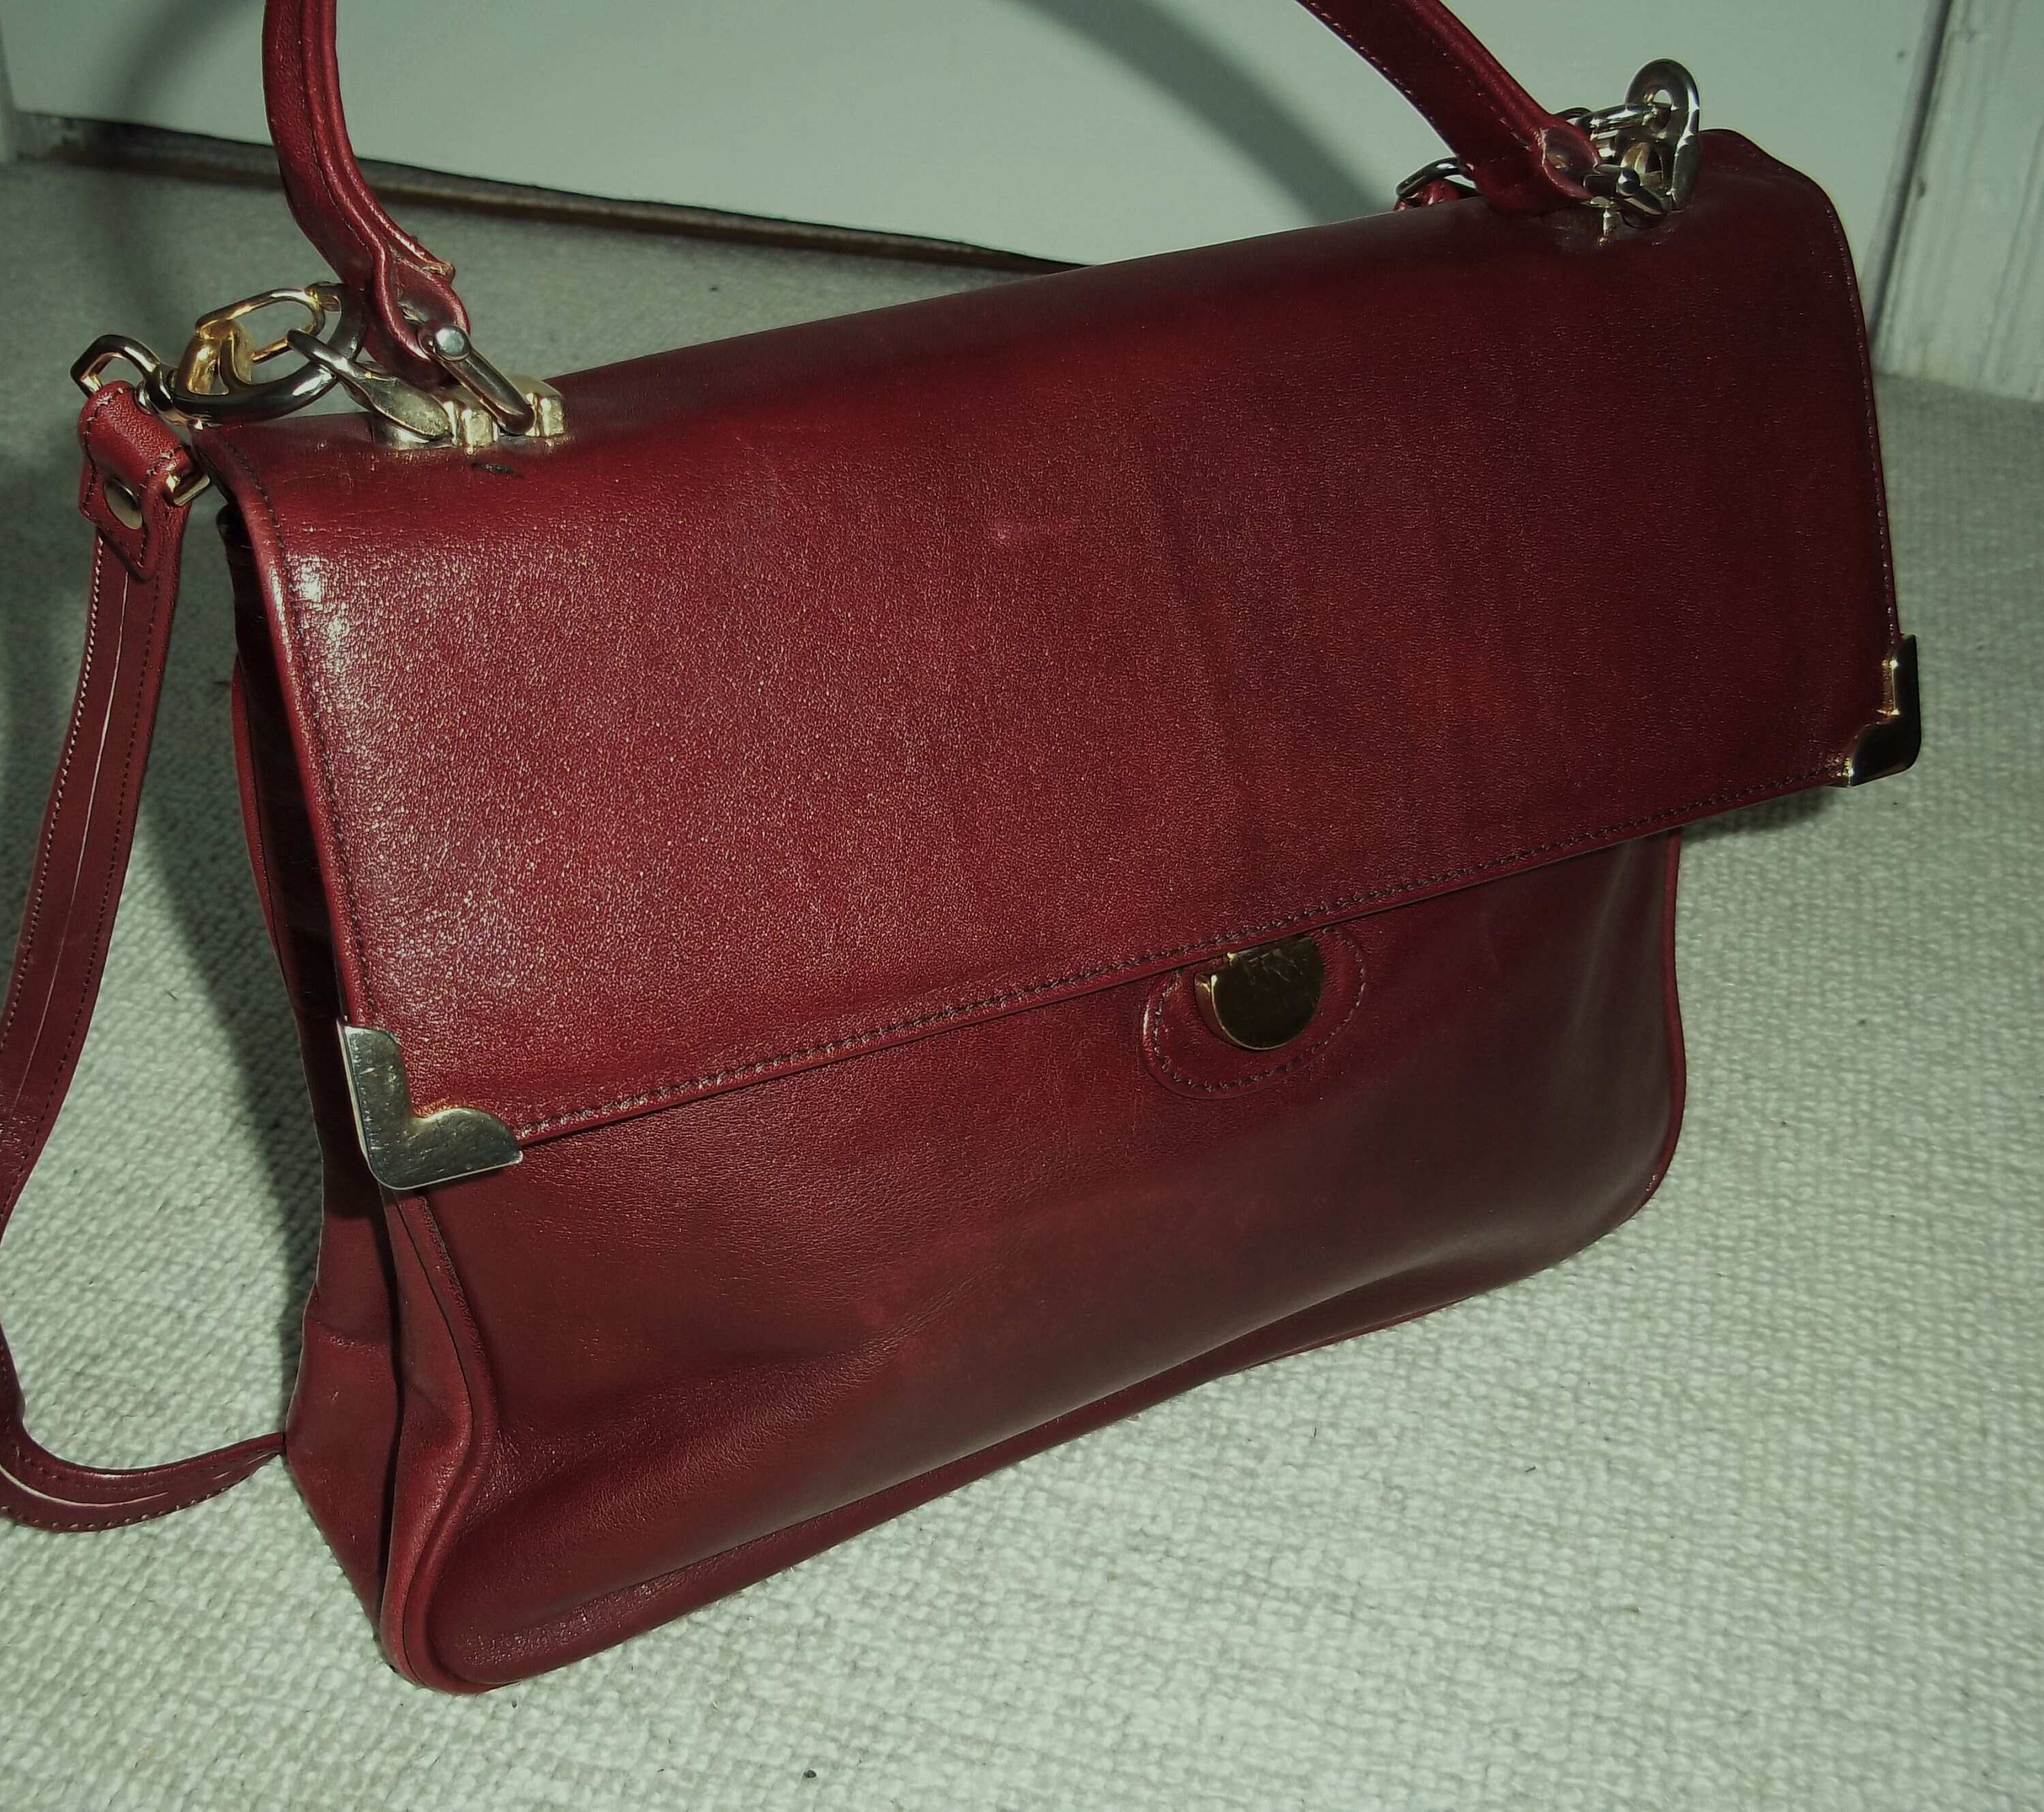 Burgundy Leather Handbag - StarCrest